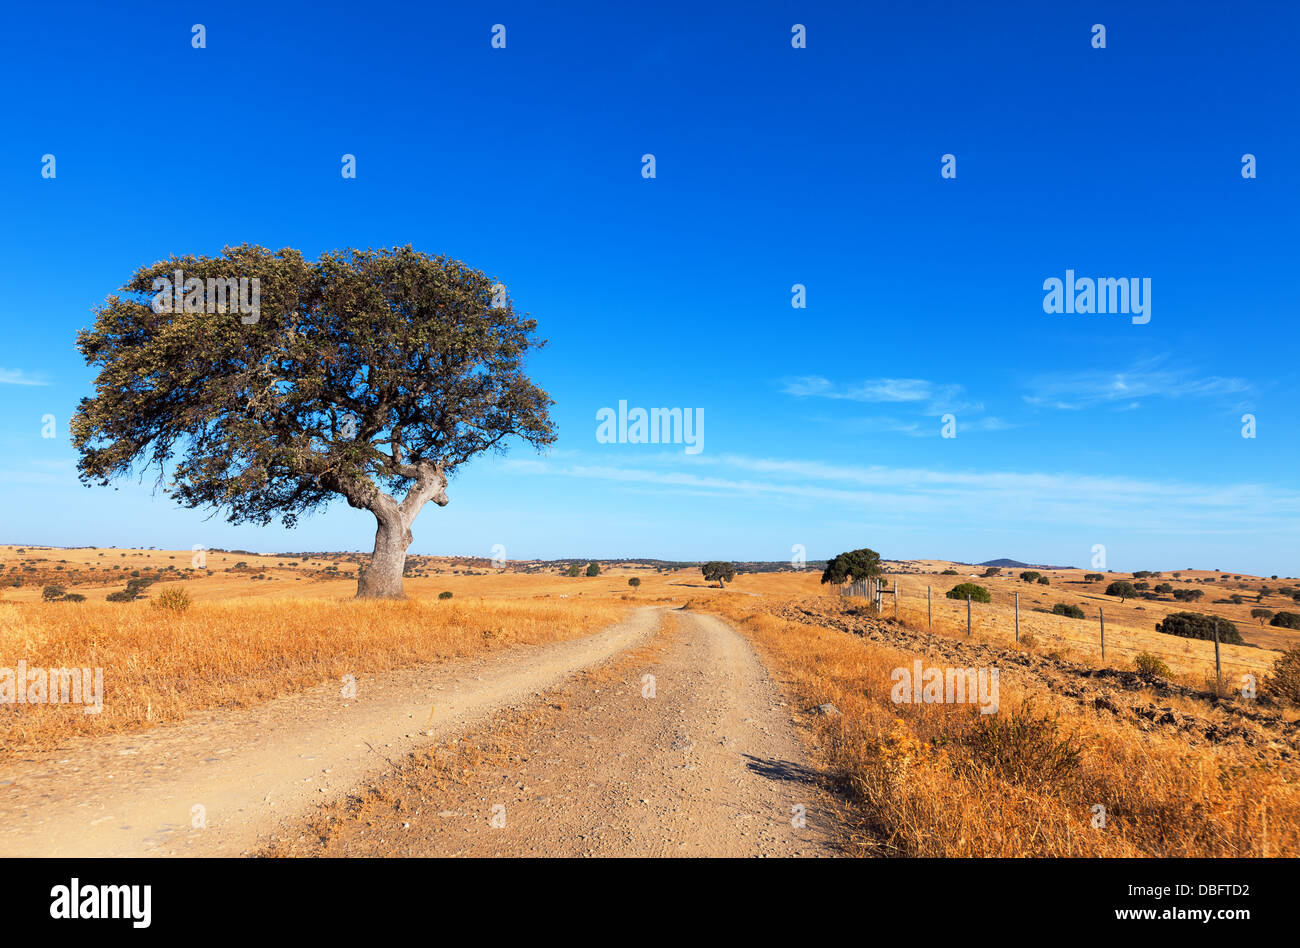 Einzigen Baum in einem Weizenfeld auf dem Hintergrund des blauen Himmels, schöne Landschaft Stockfoto